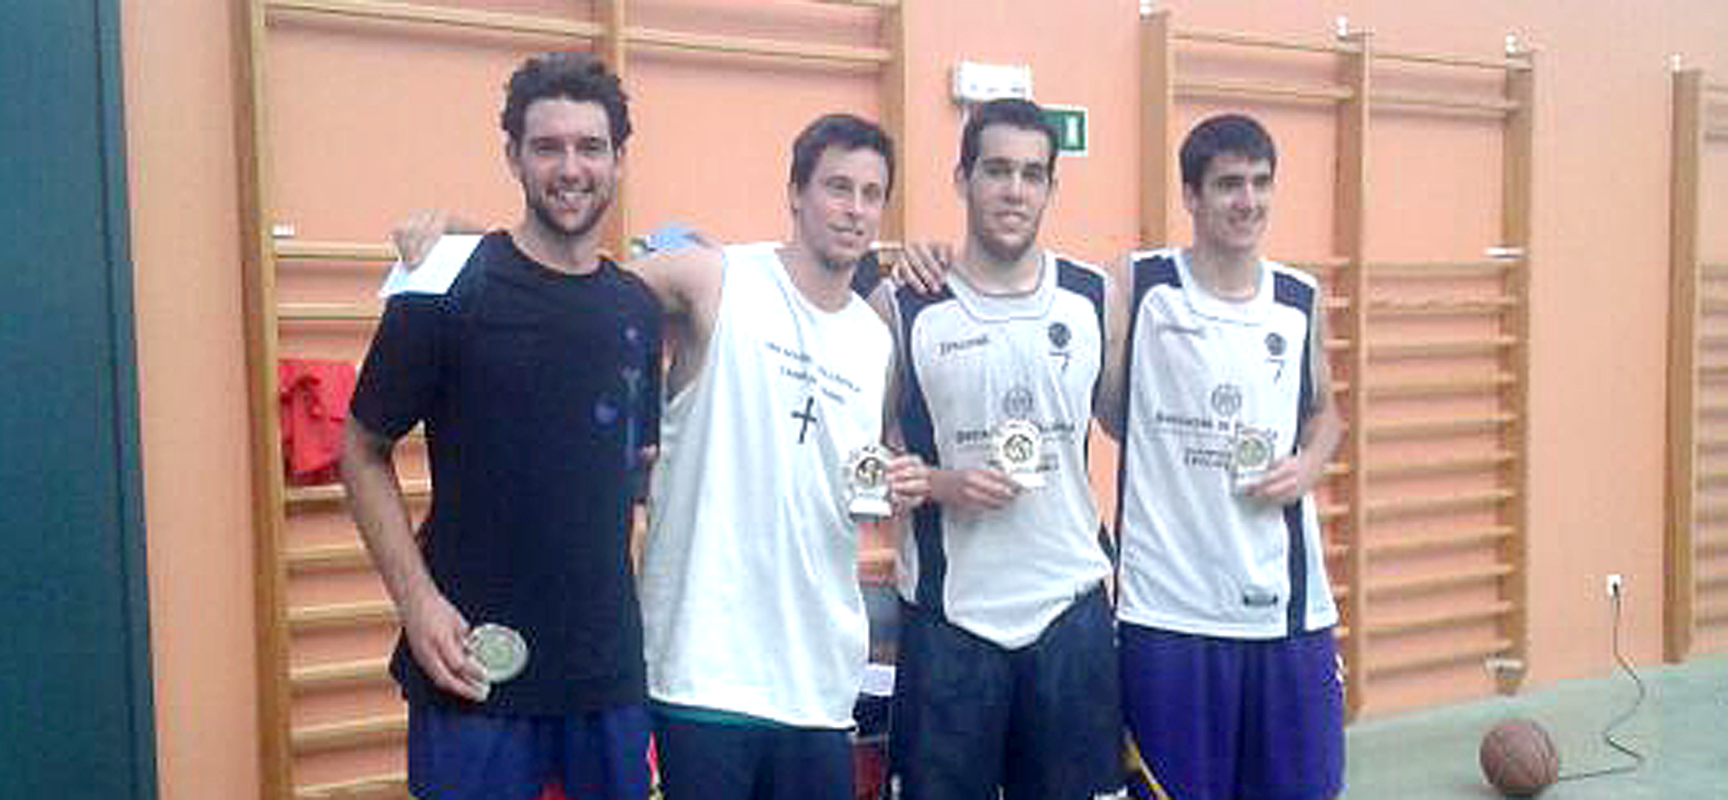 Integrantes del equipo "Pitufillas de Chueca" ganador del torneo. |Foto: Baloncesto Cuéllar|